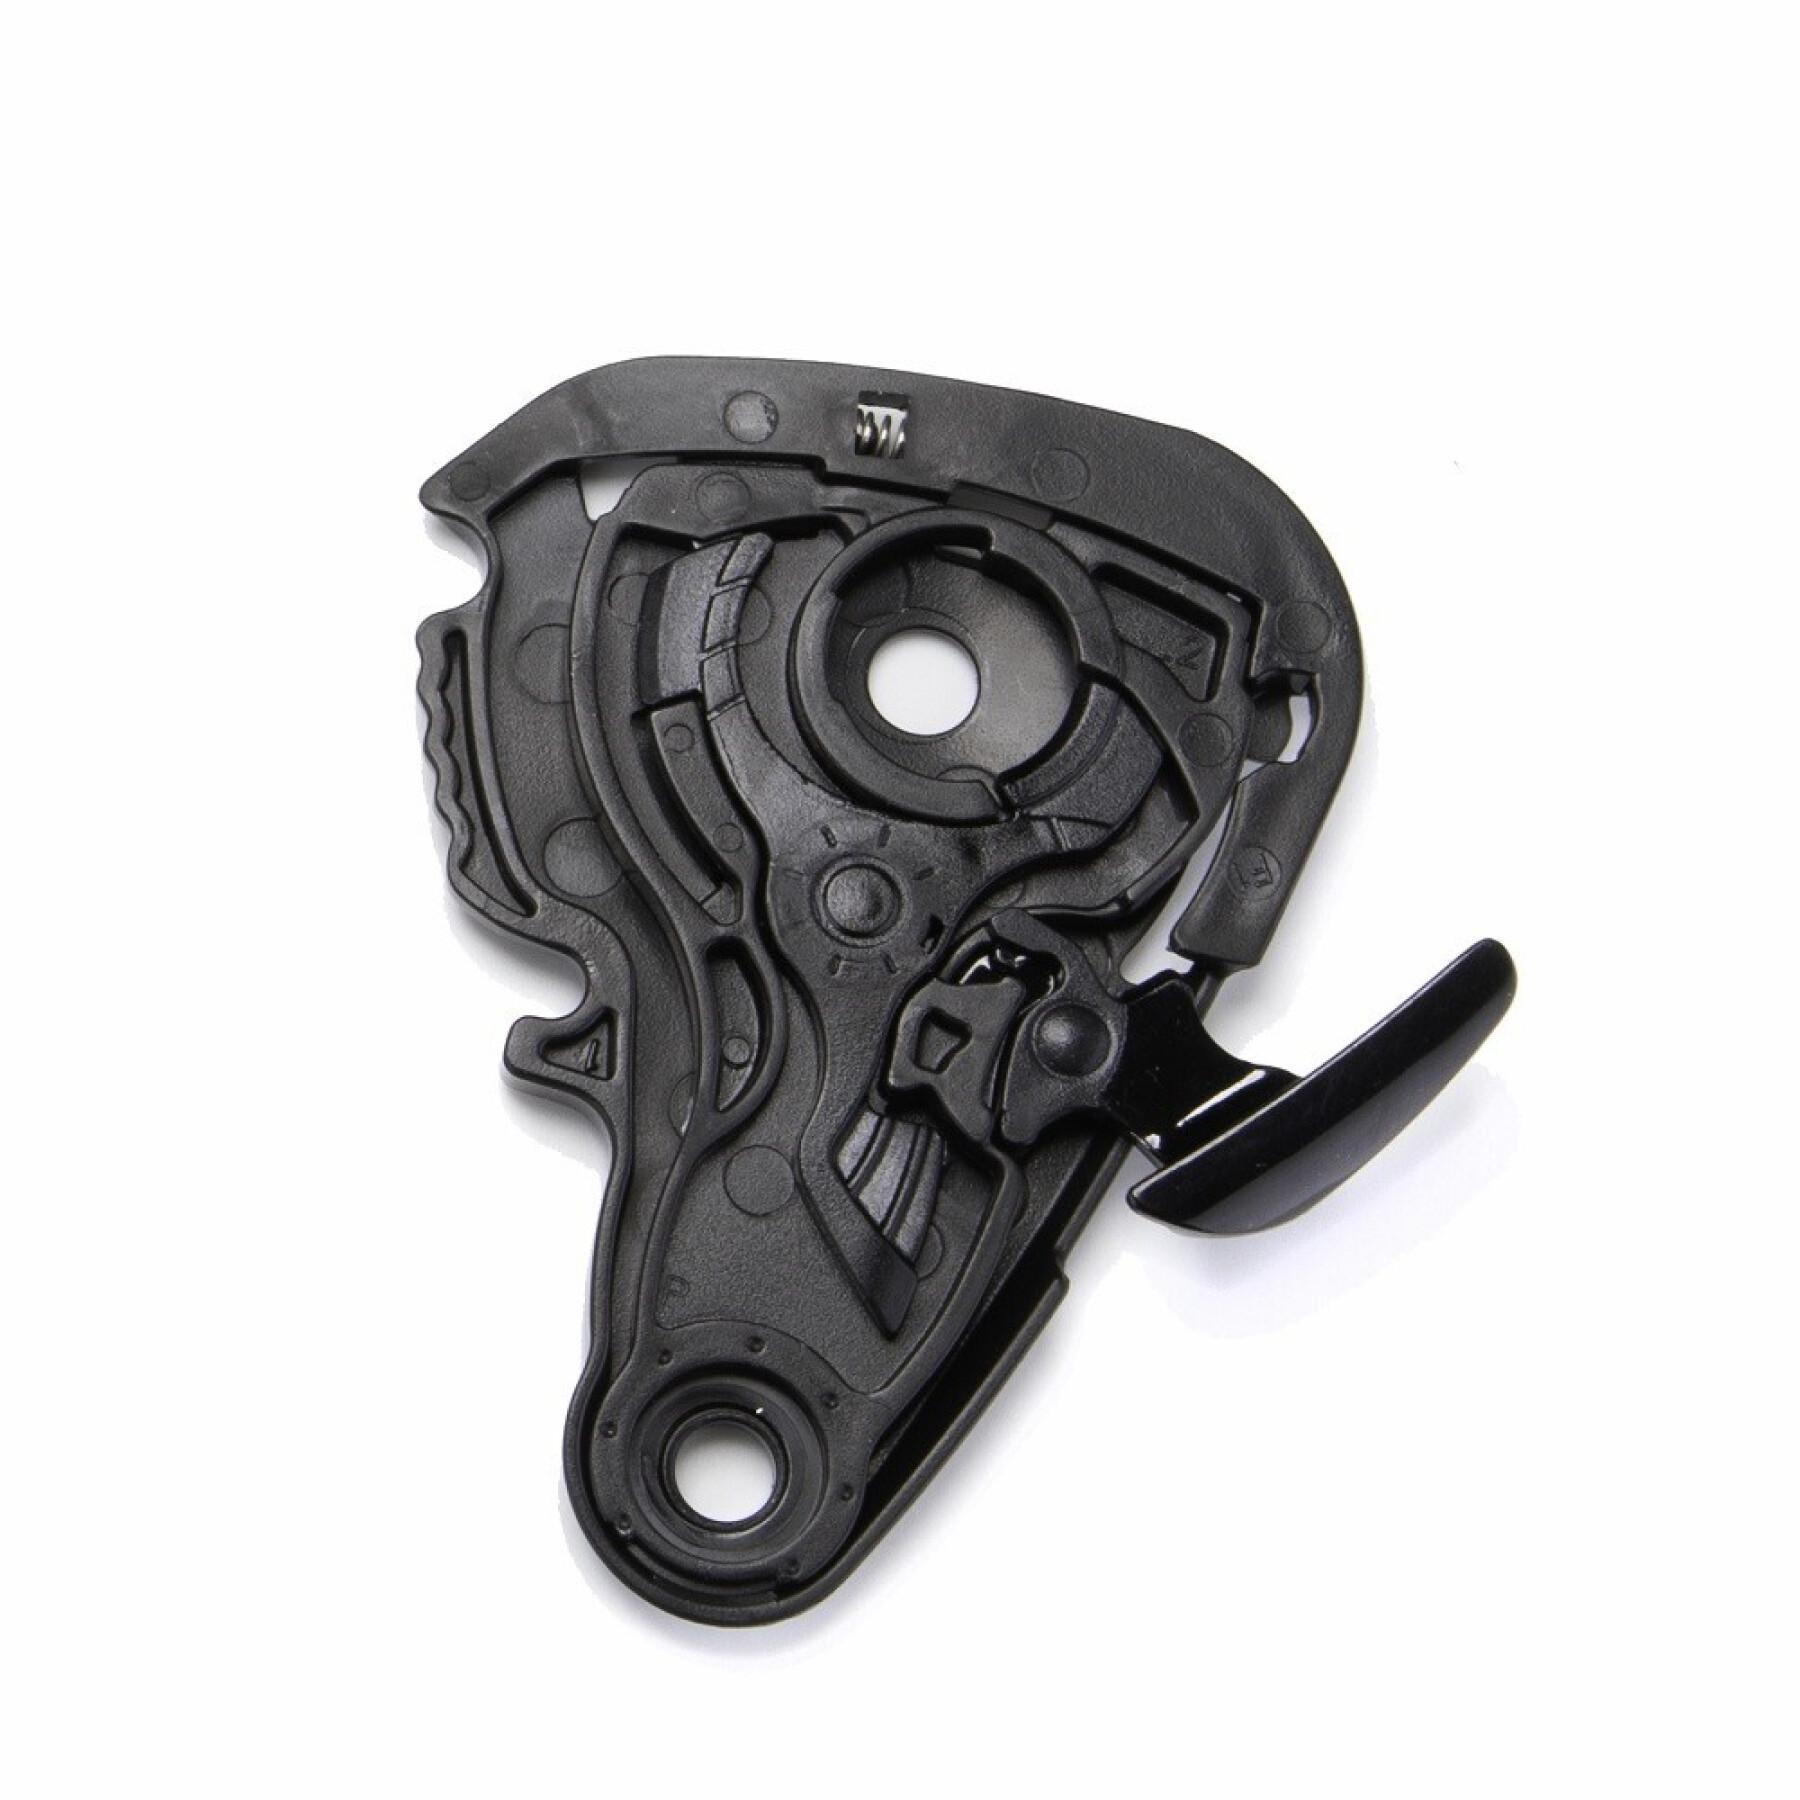 Motorcycle visor mounting kit Scorpion Exo-491 / 510 / 1200 Shield